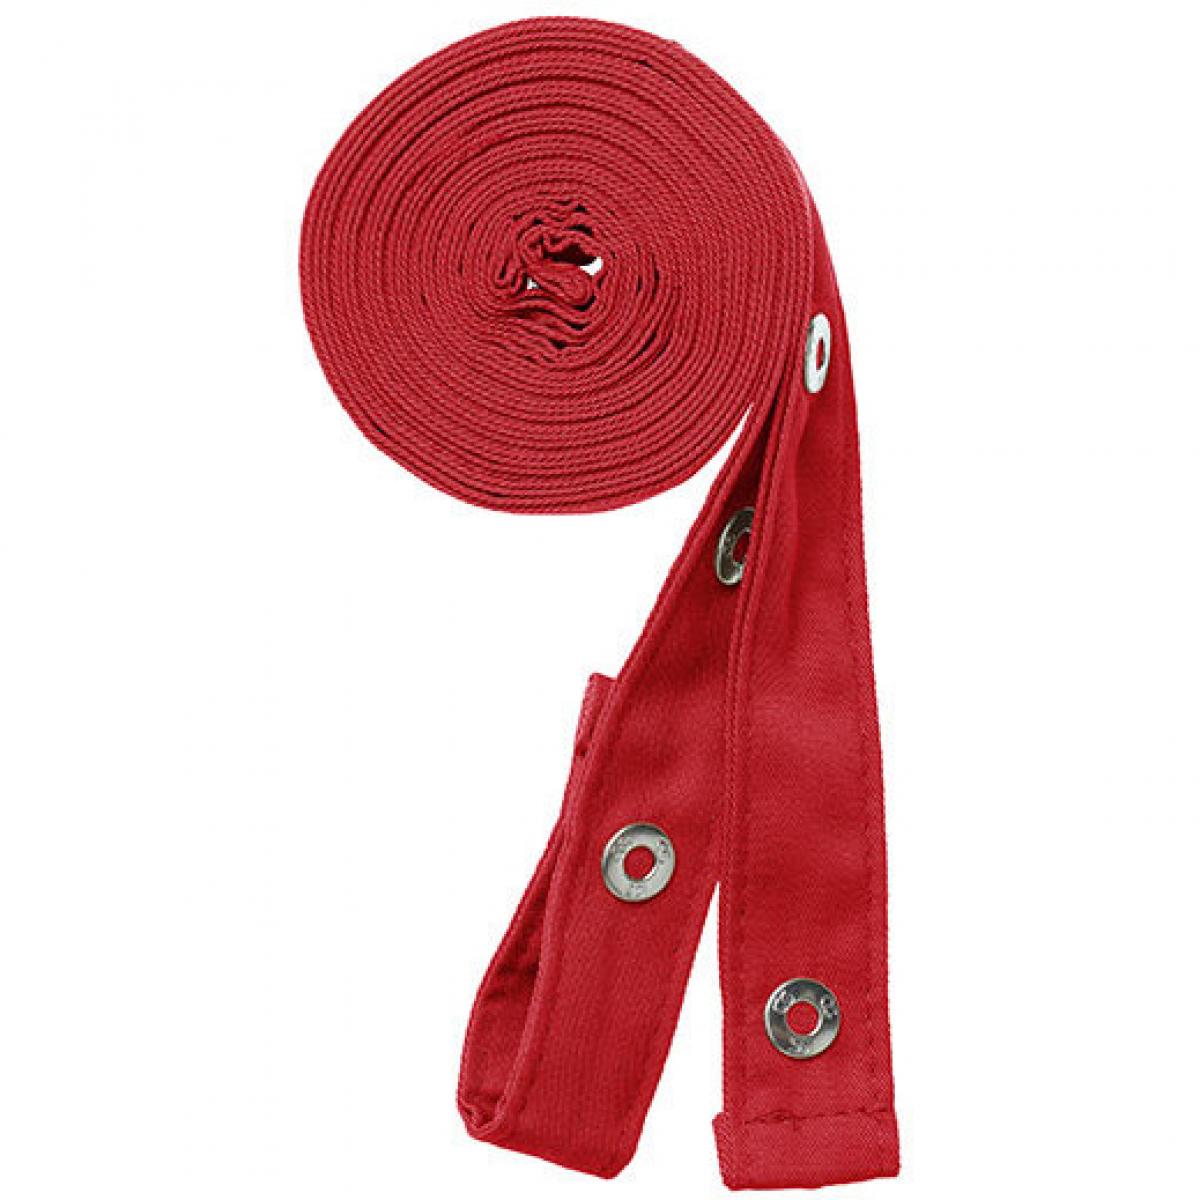 Hersteller: CG Workwear Herstellernummer: 42141 Artikelbezeichnung: Potenza X Classic Strap Set je 230 cm lang und 2,5 cm breit Farbe: Red